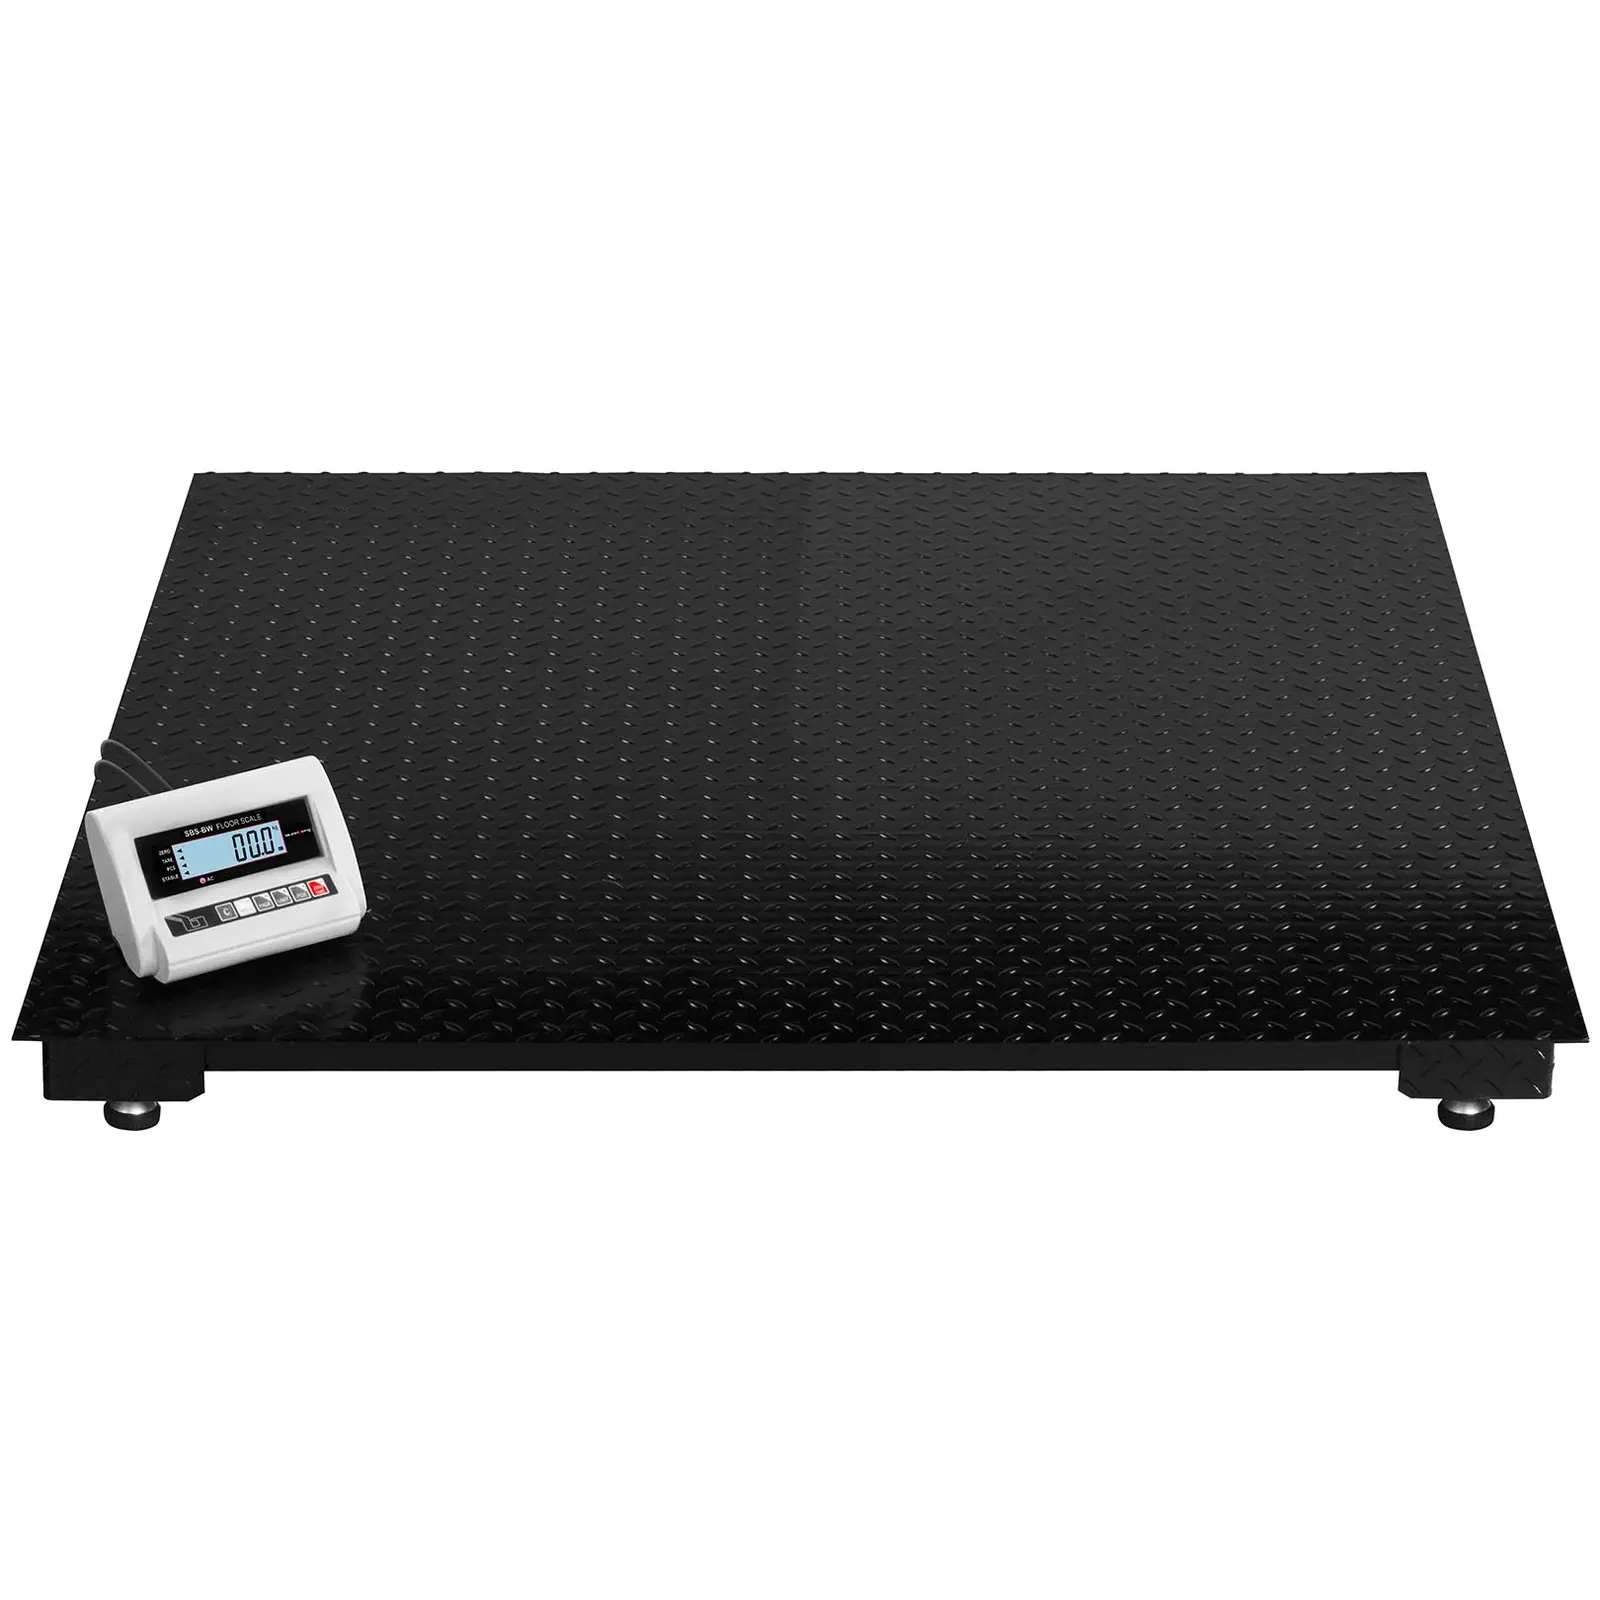 B-zboží Podlahová váha - 3 t / 1 kg -LCD